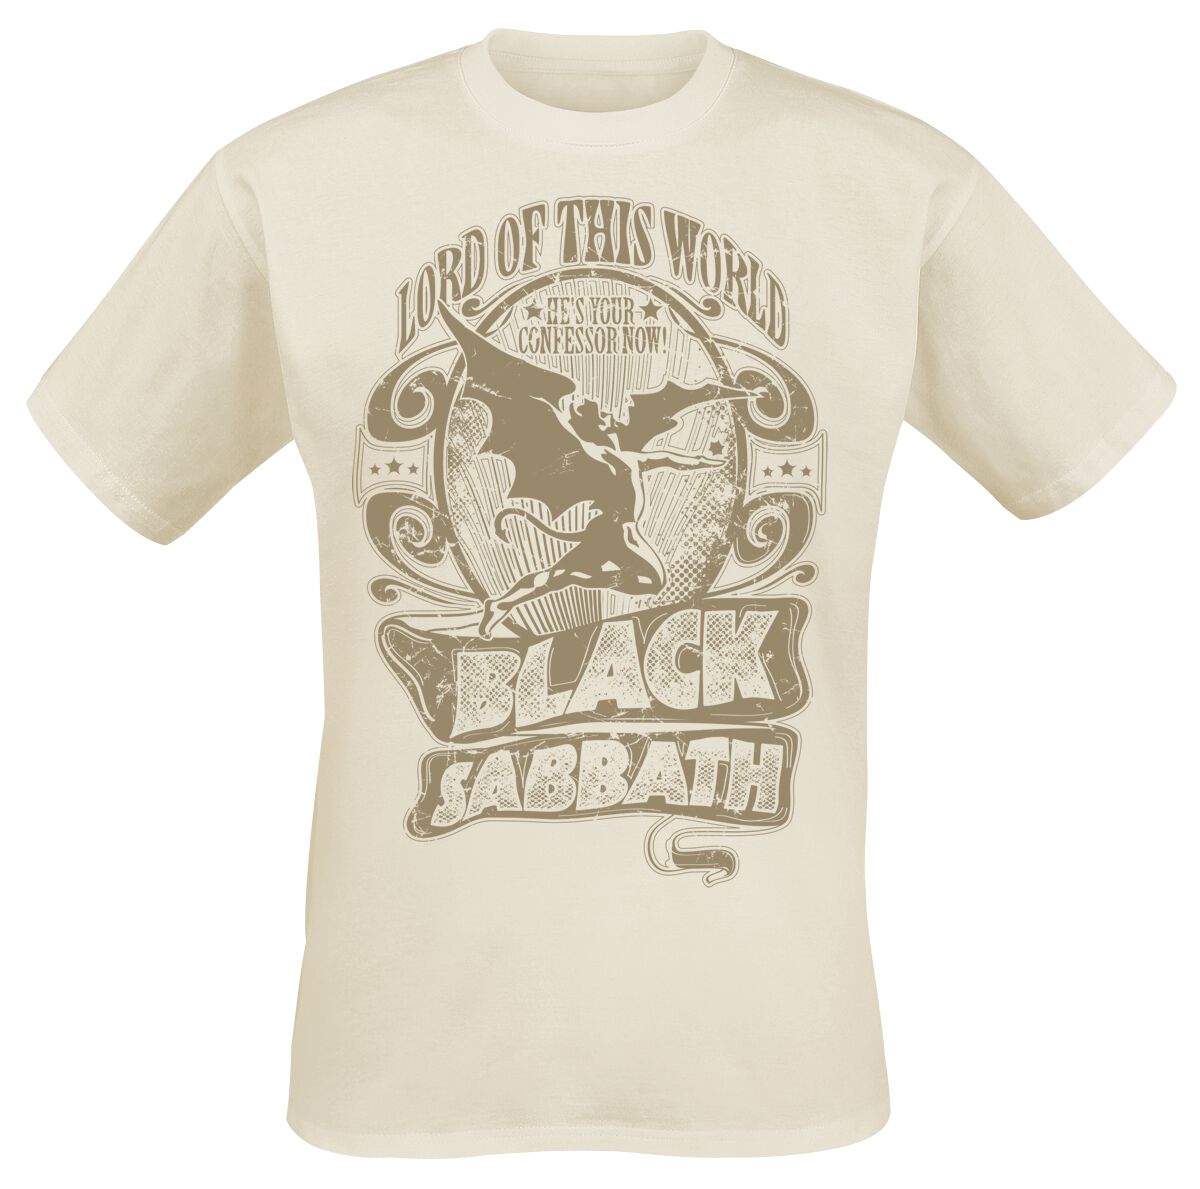 Black Sabbath T-Shirt - Lord Of This World - L bis XXL - für Männer - Größe XXL - natur  - Lizenziertes Merchandise!